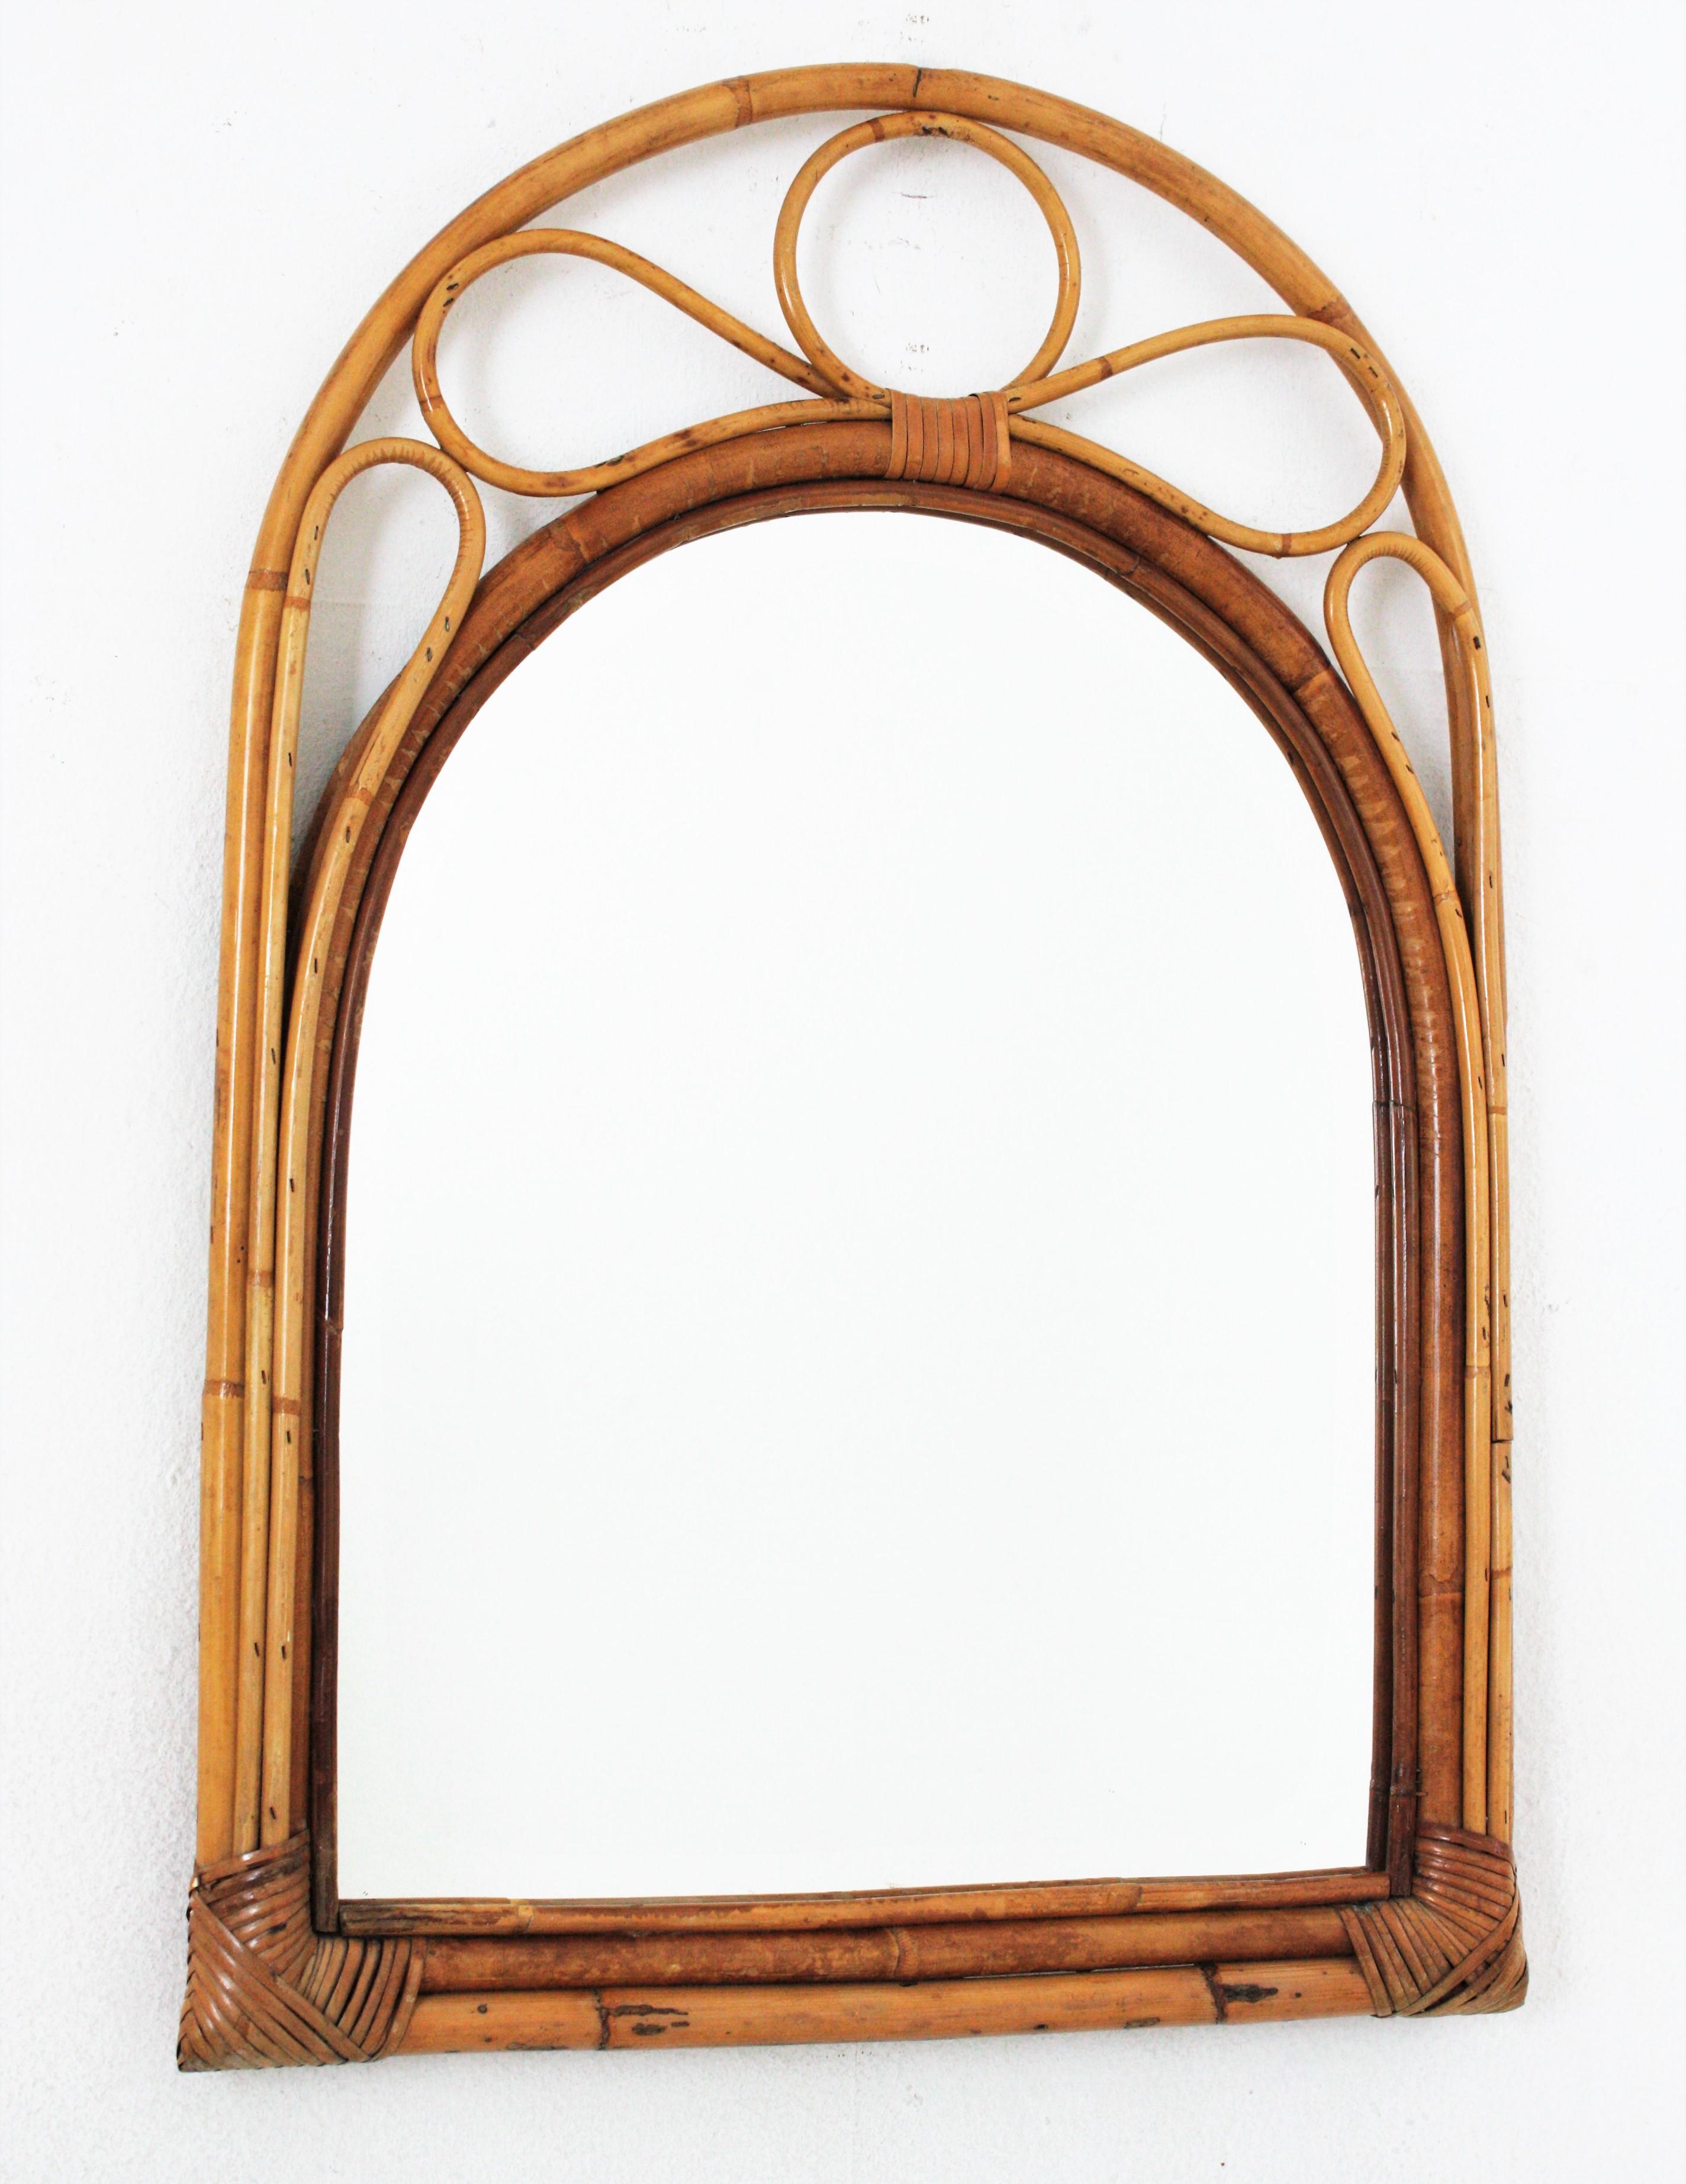 Auffälliger Spiegel aus Bambus und Rattan aus der Jahrhundertmitte mit gewölbtem Oberteil. Spanien, 1960er Jahre
Dieser schöne Spiegel wurde in Handarbeit aus Bambusrohr und Rattan gefertigt und kombiniert Midcentury- und orientalische Akzente.
Es